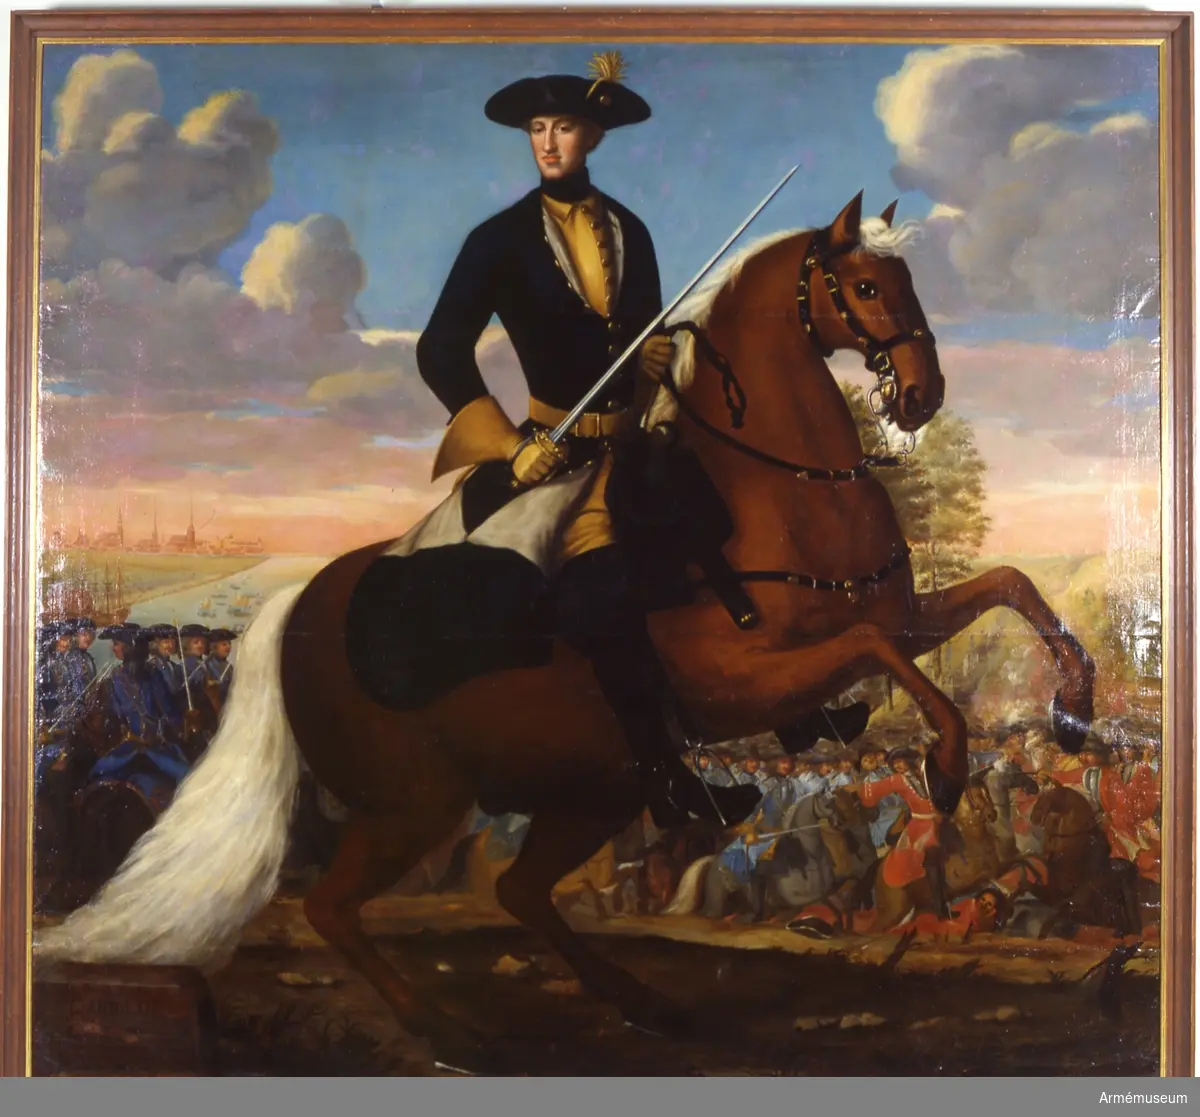 Grupp M I.
Målning signerad av J. H Wedekind föreställande Karl XII till häst i fält.